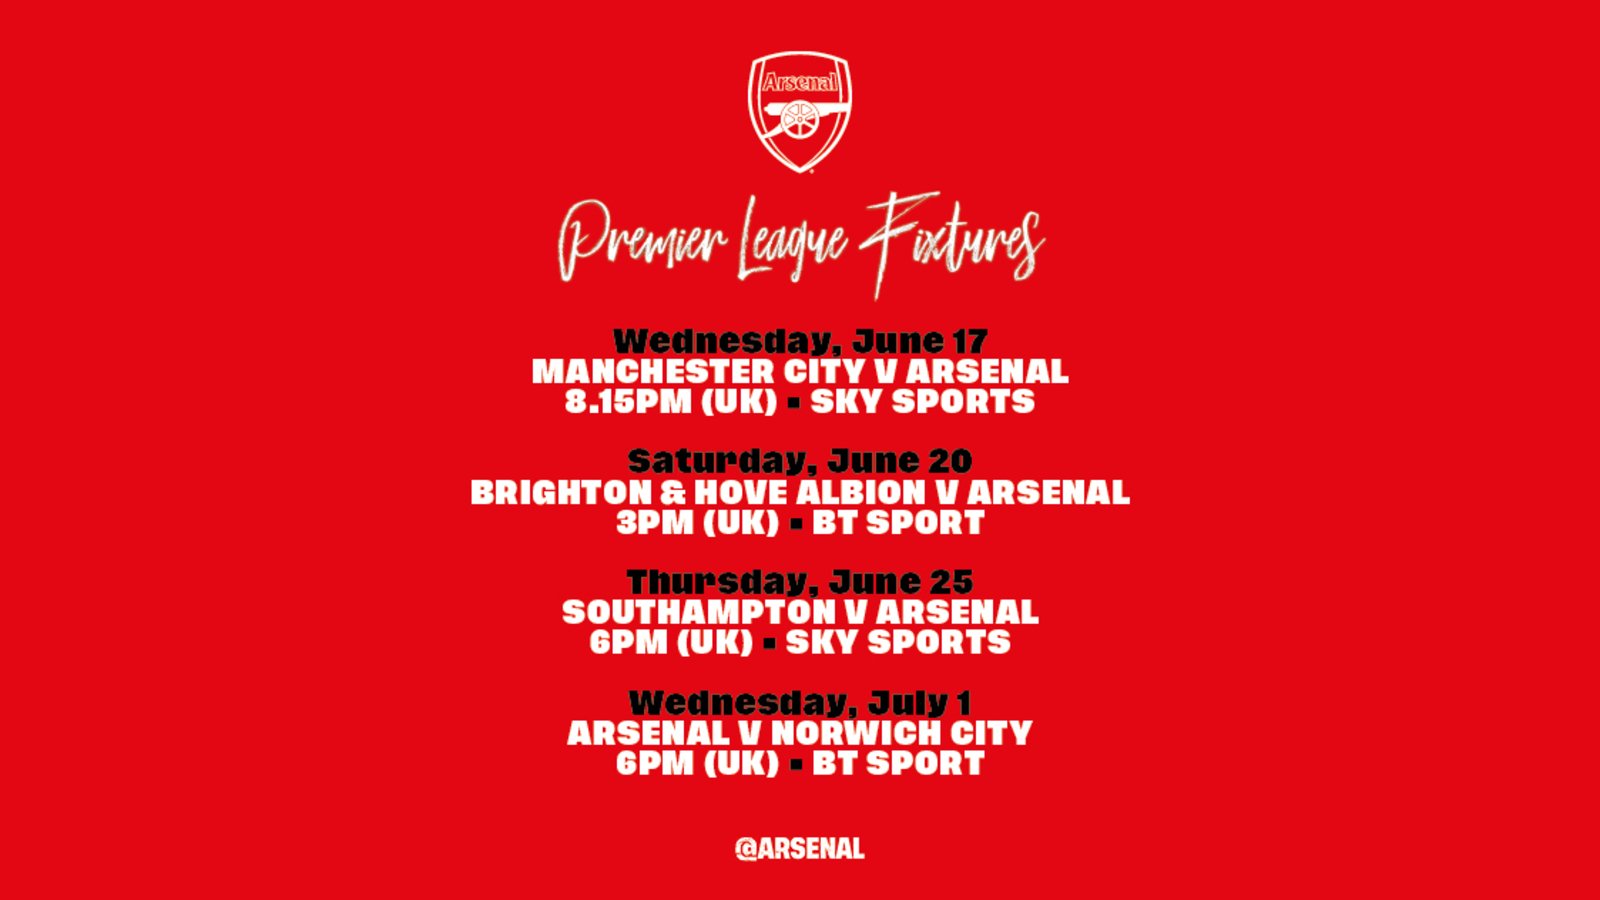 Four Premier League fixtures confirmed News Arsenal